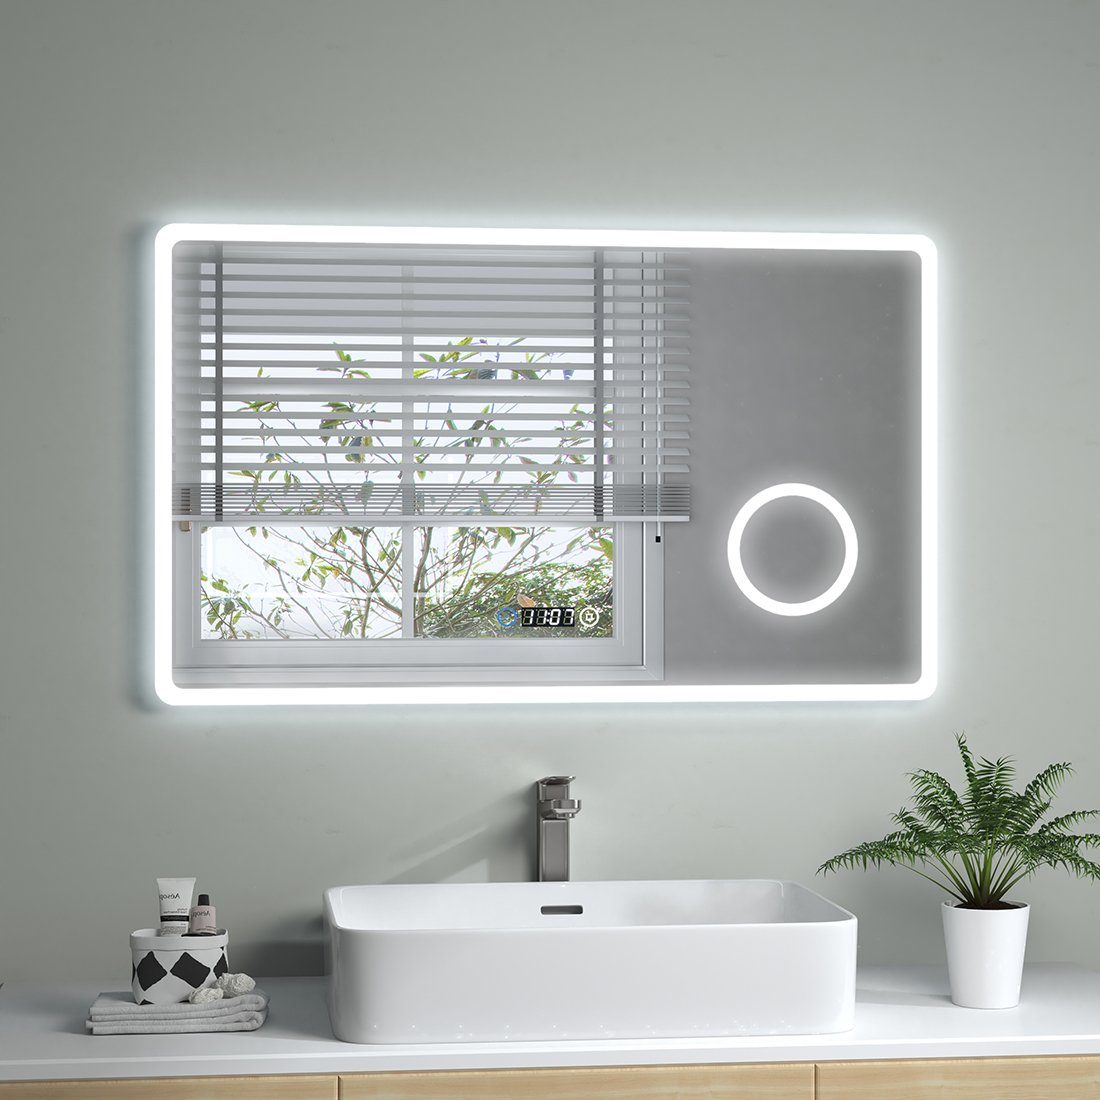 Badspiegel mit Wandspiegel, S'AFIELINA 100 x cm,Touch-Schalter,Uhr,3 Badezimmerspiegel LED Beleuchtung 60 Badspiegel Vergrößerung Lichtfarbe,3-Fach